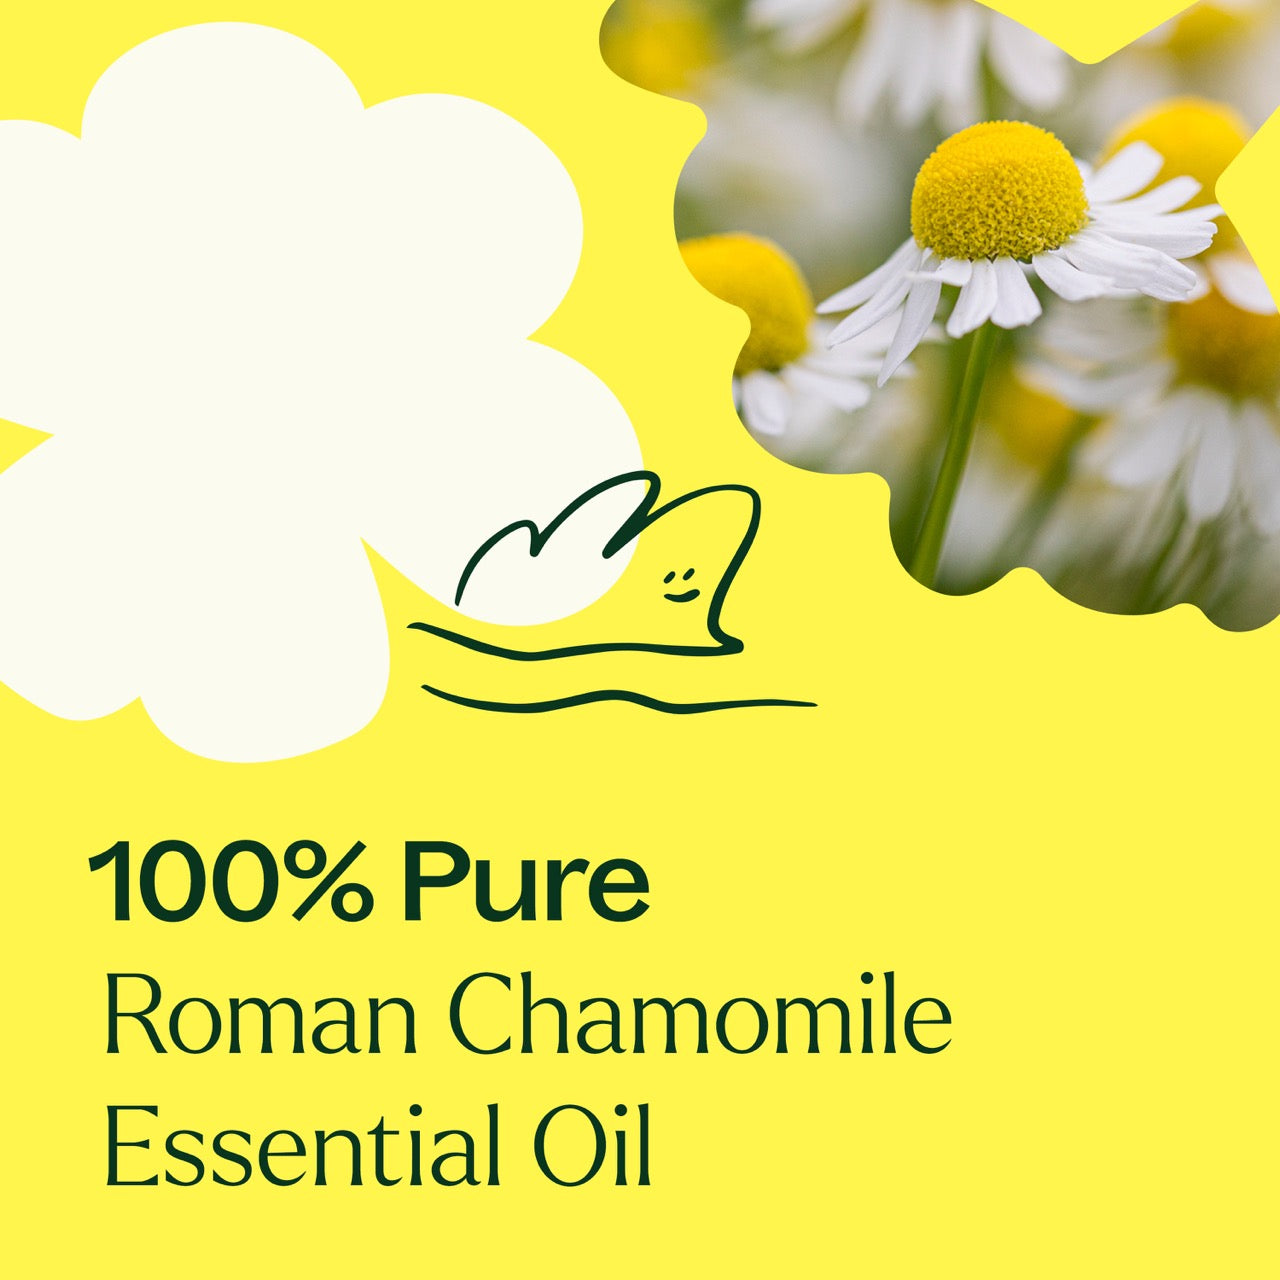 100% pure Roman Chamomile Essential Oil